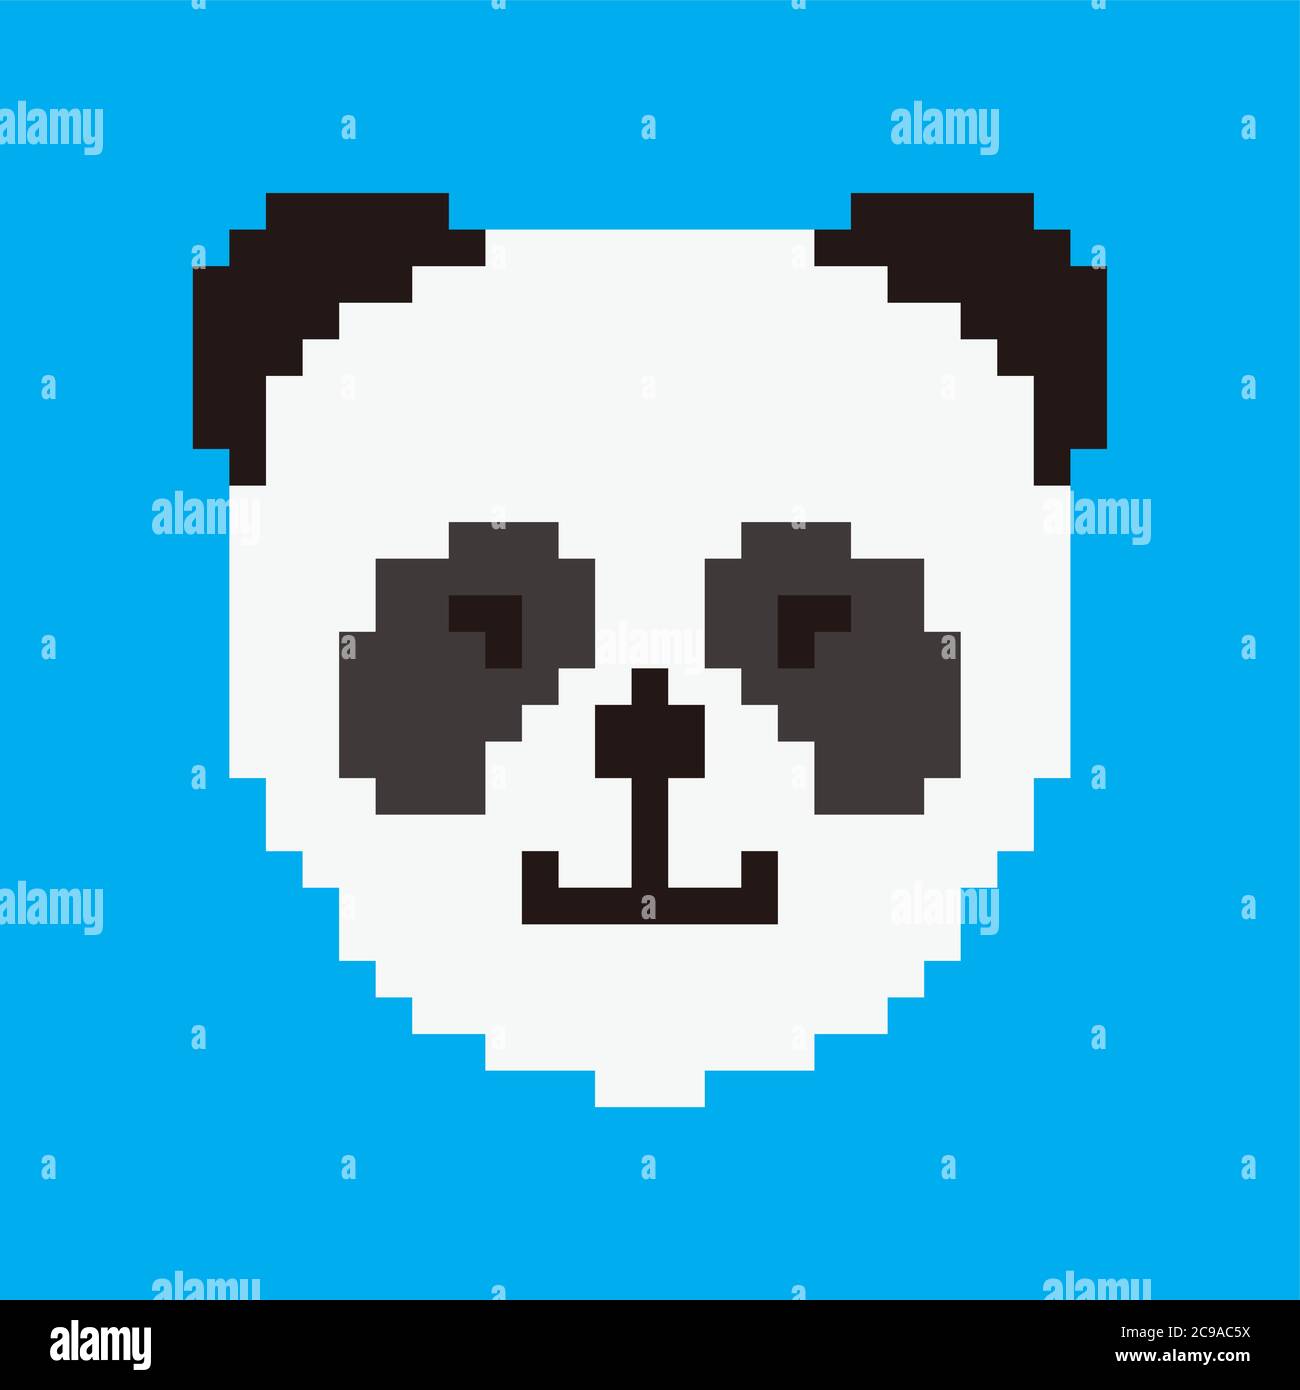 Pixel art carattere panda 8 bit pixel art bianco e nero orso isolato su sfondo bianco. Simbolo cinese delle specie in pericolo. Icona animale della fauna selvatica. Illustrazione Vettoriale